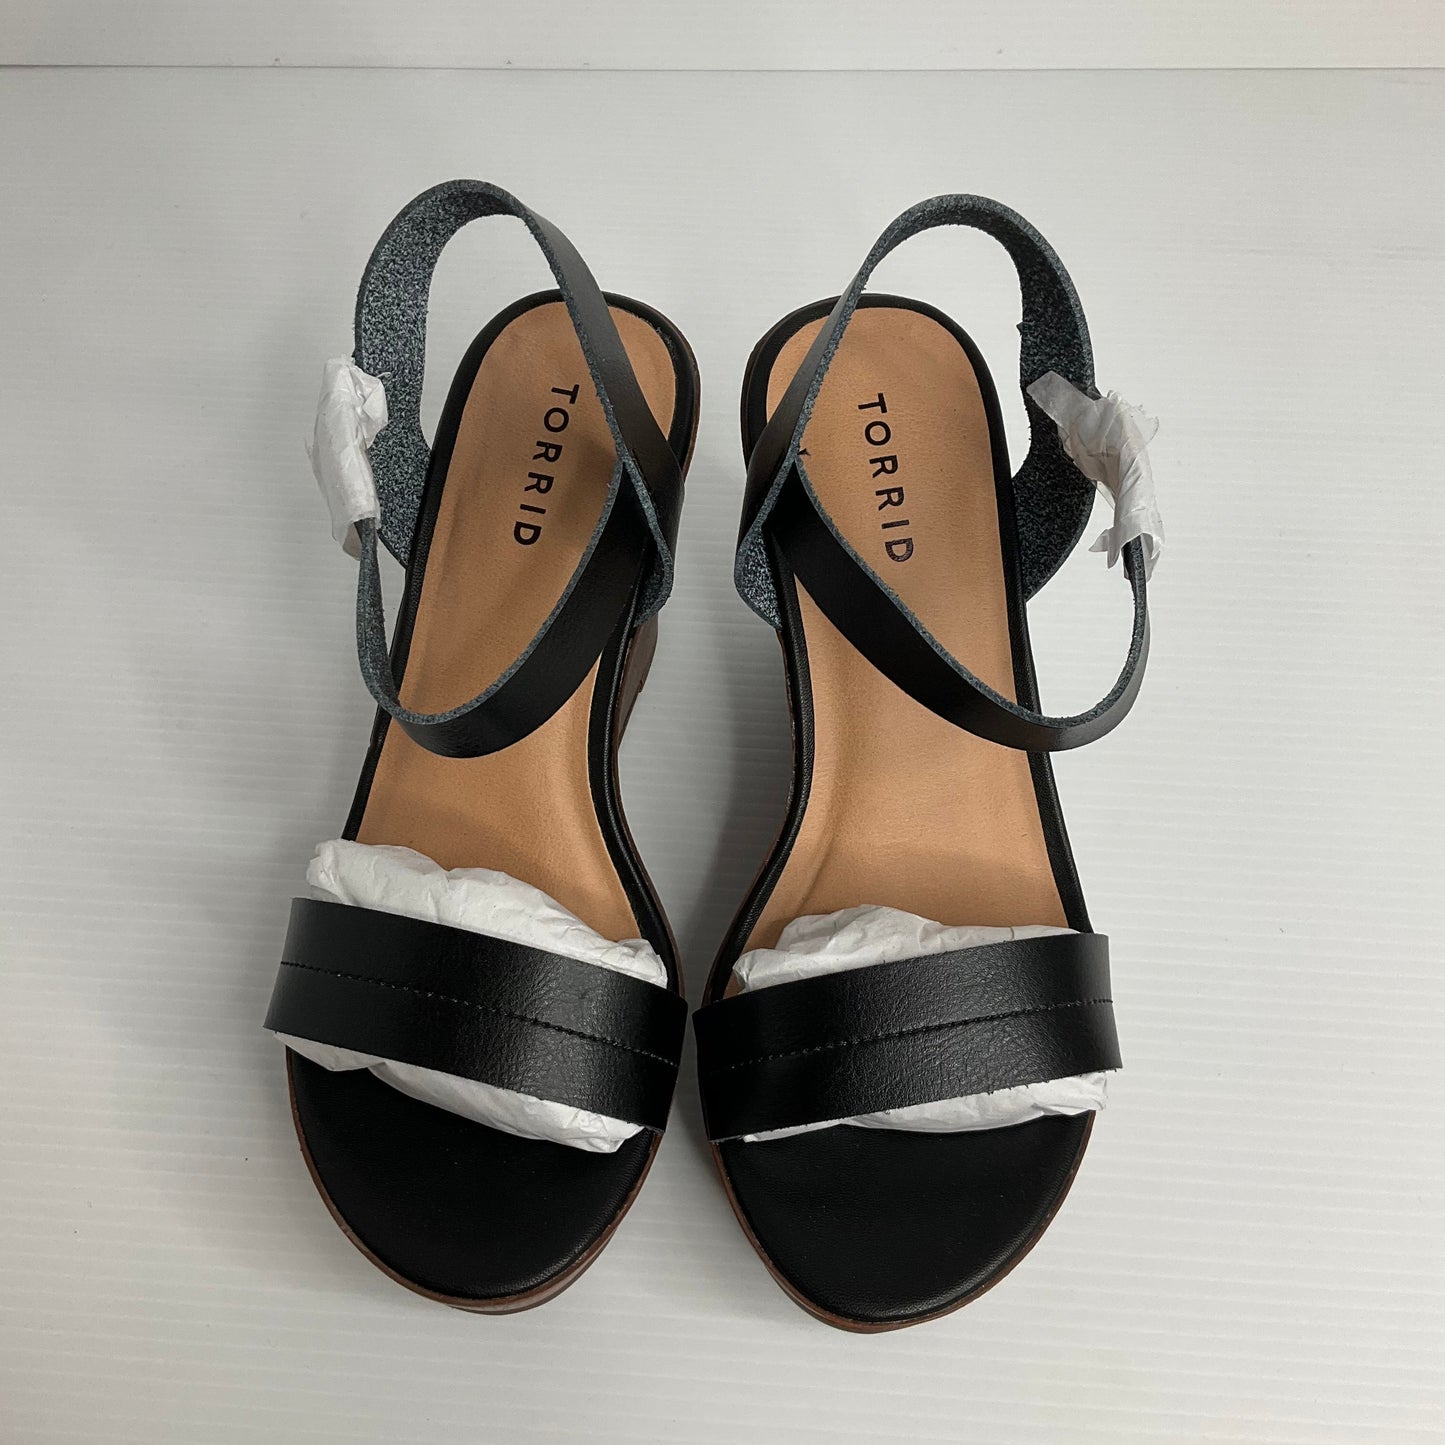 Black & Brown Sandals Heels Wedge Torrid, Size 8